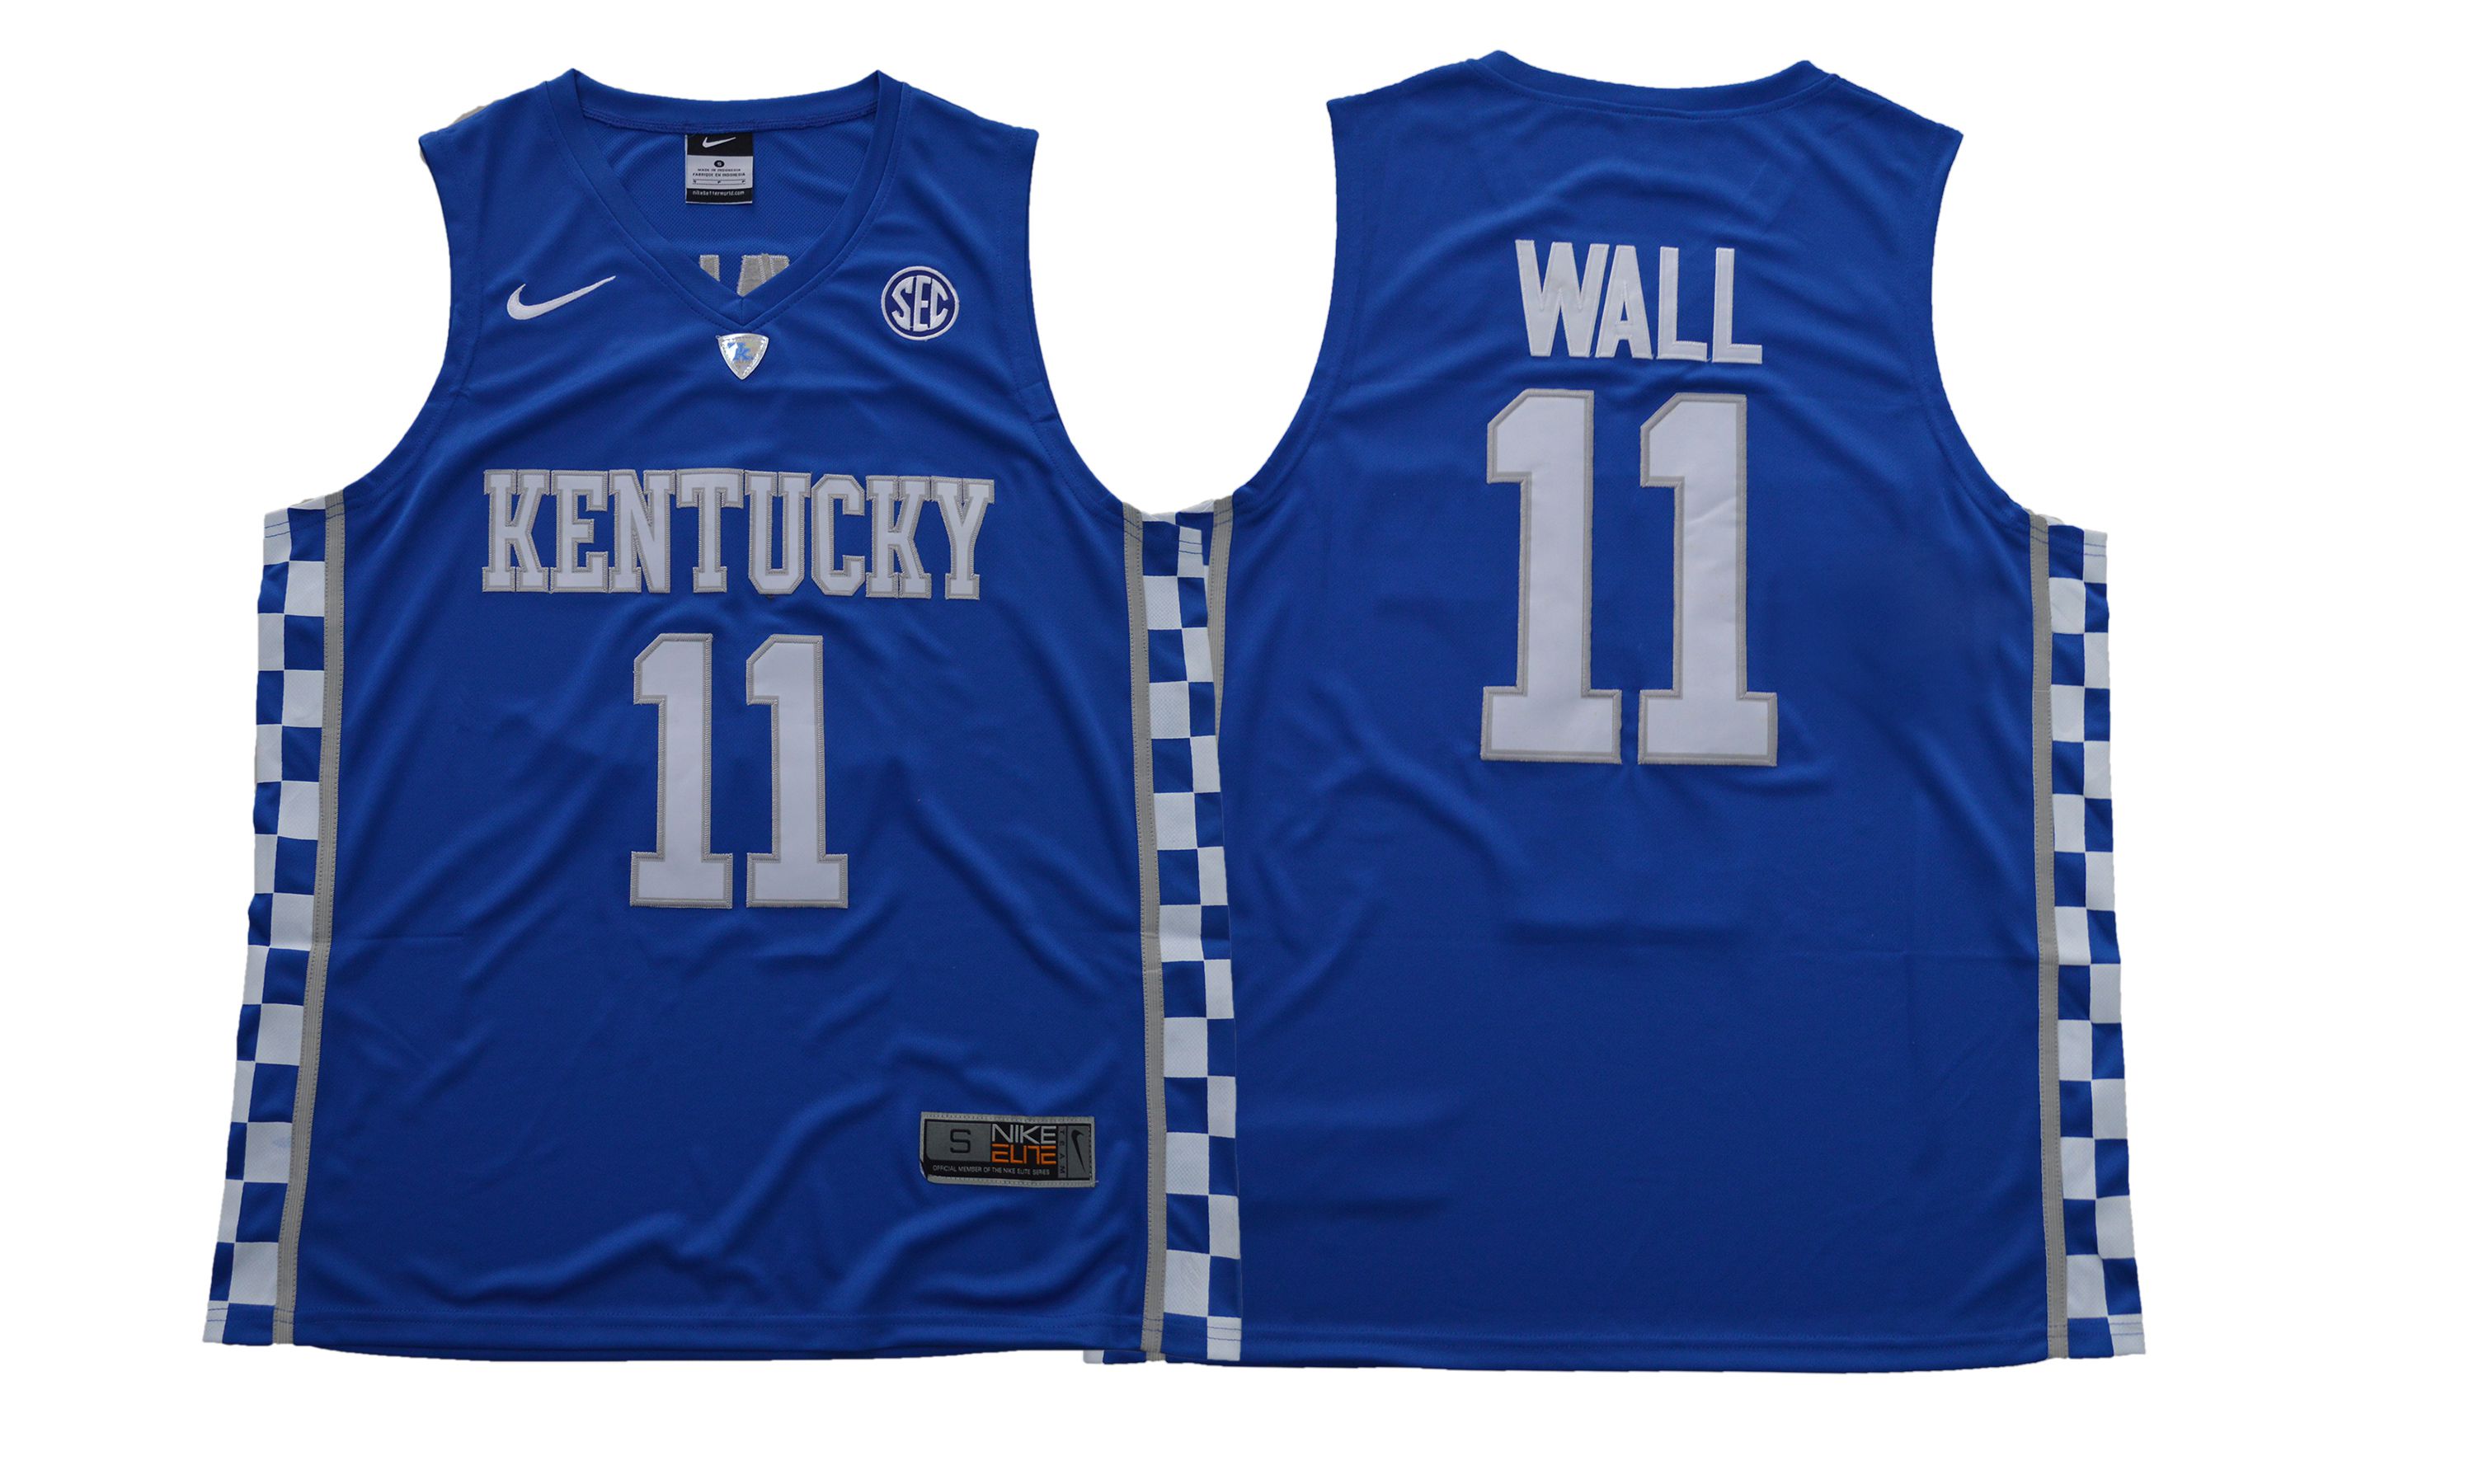 Men Kentucky Wildcats 11 Wall Blue NBA NCAA Jerseys